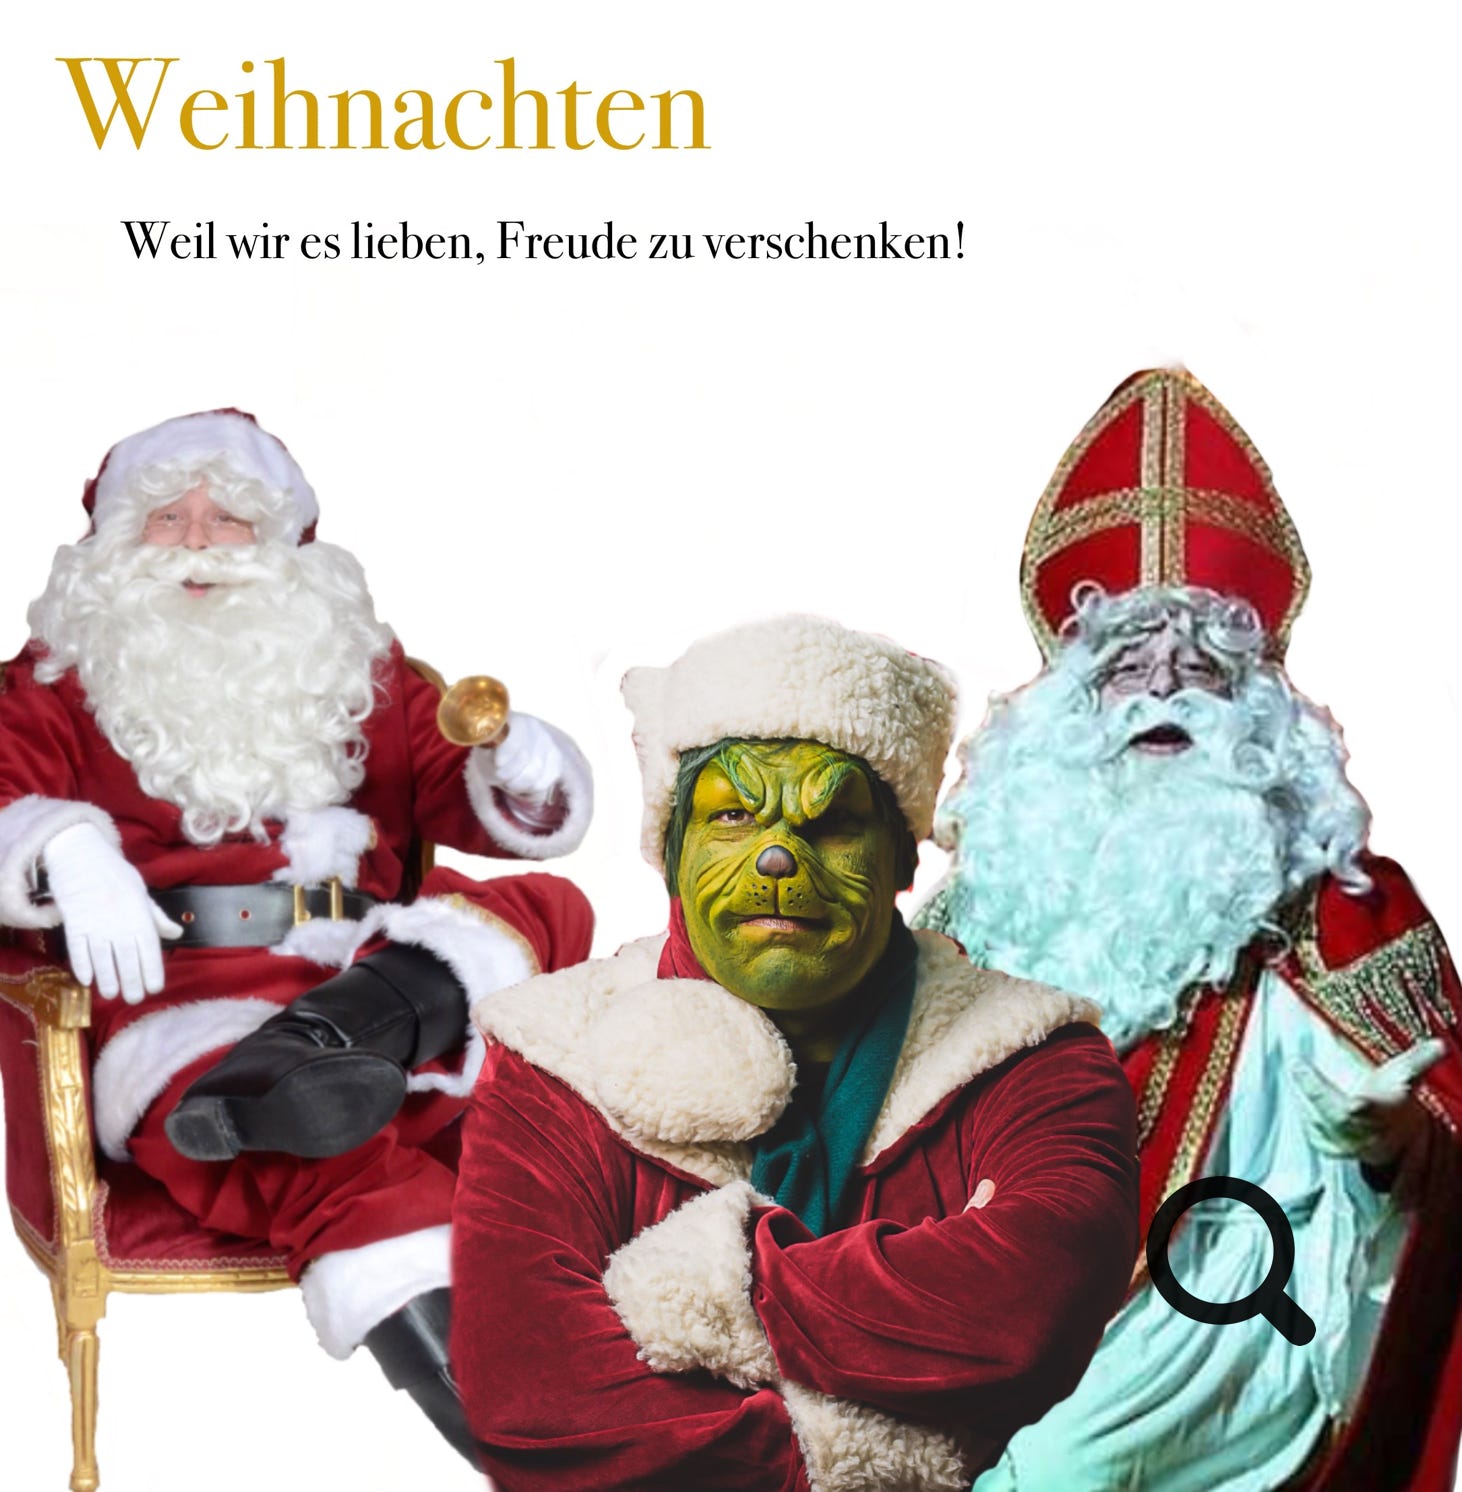 weil wir weihnachten lieben und weil wir es lieben freude zu verschenken haben wir den schönsten Weihnachtsmann, ein jongleirendes Engelchen und ein vor freude nur zu sprühenden Grinch. Theater Liebreiz Lübeck